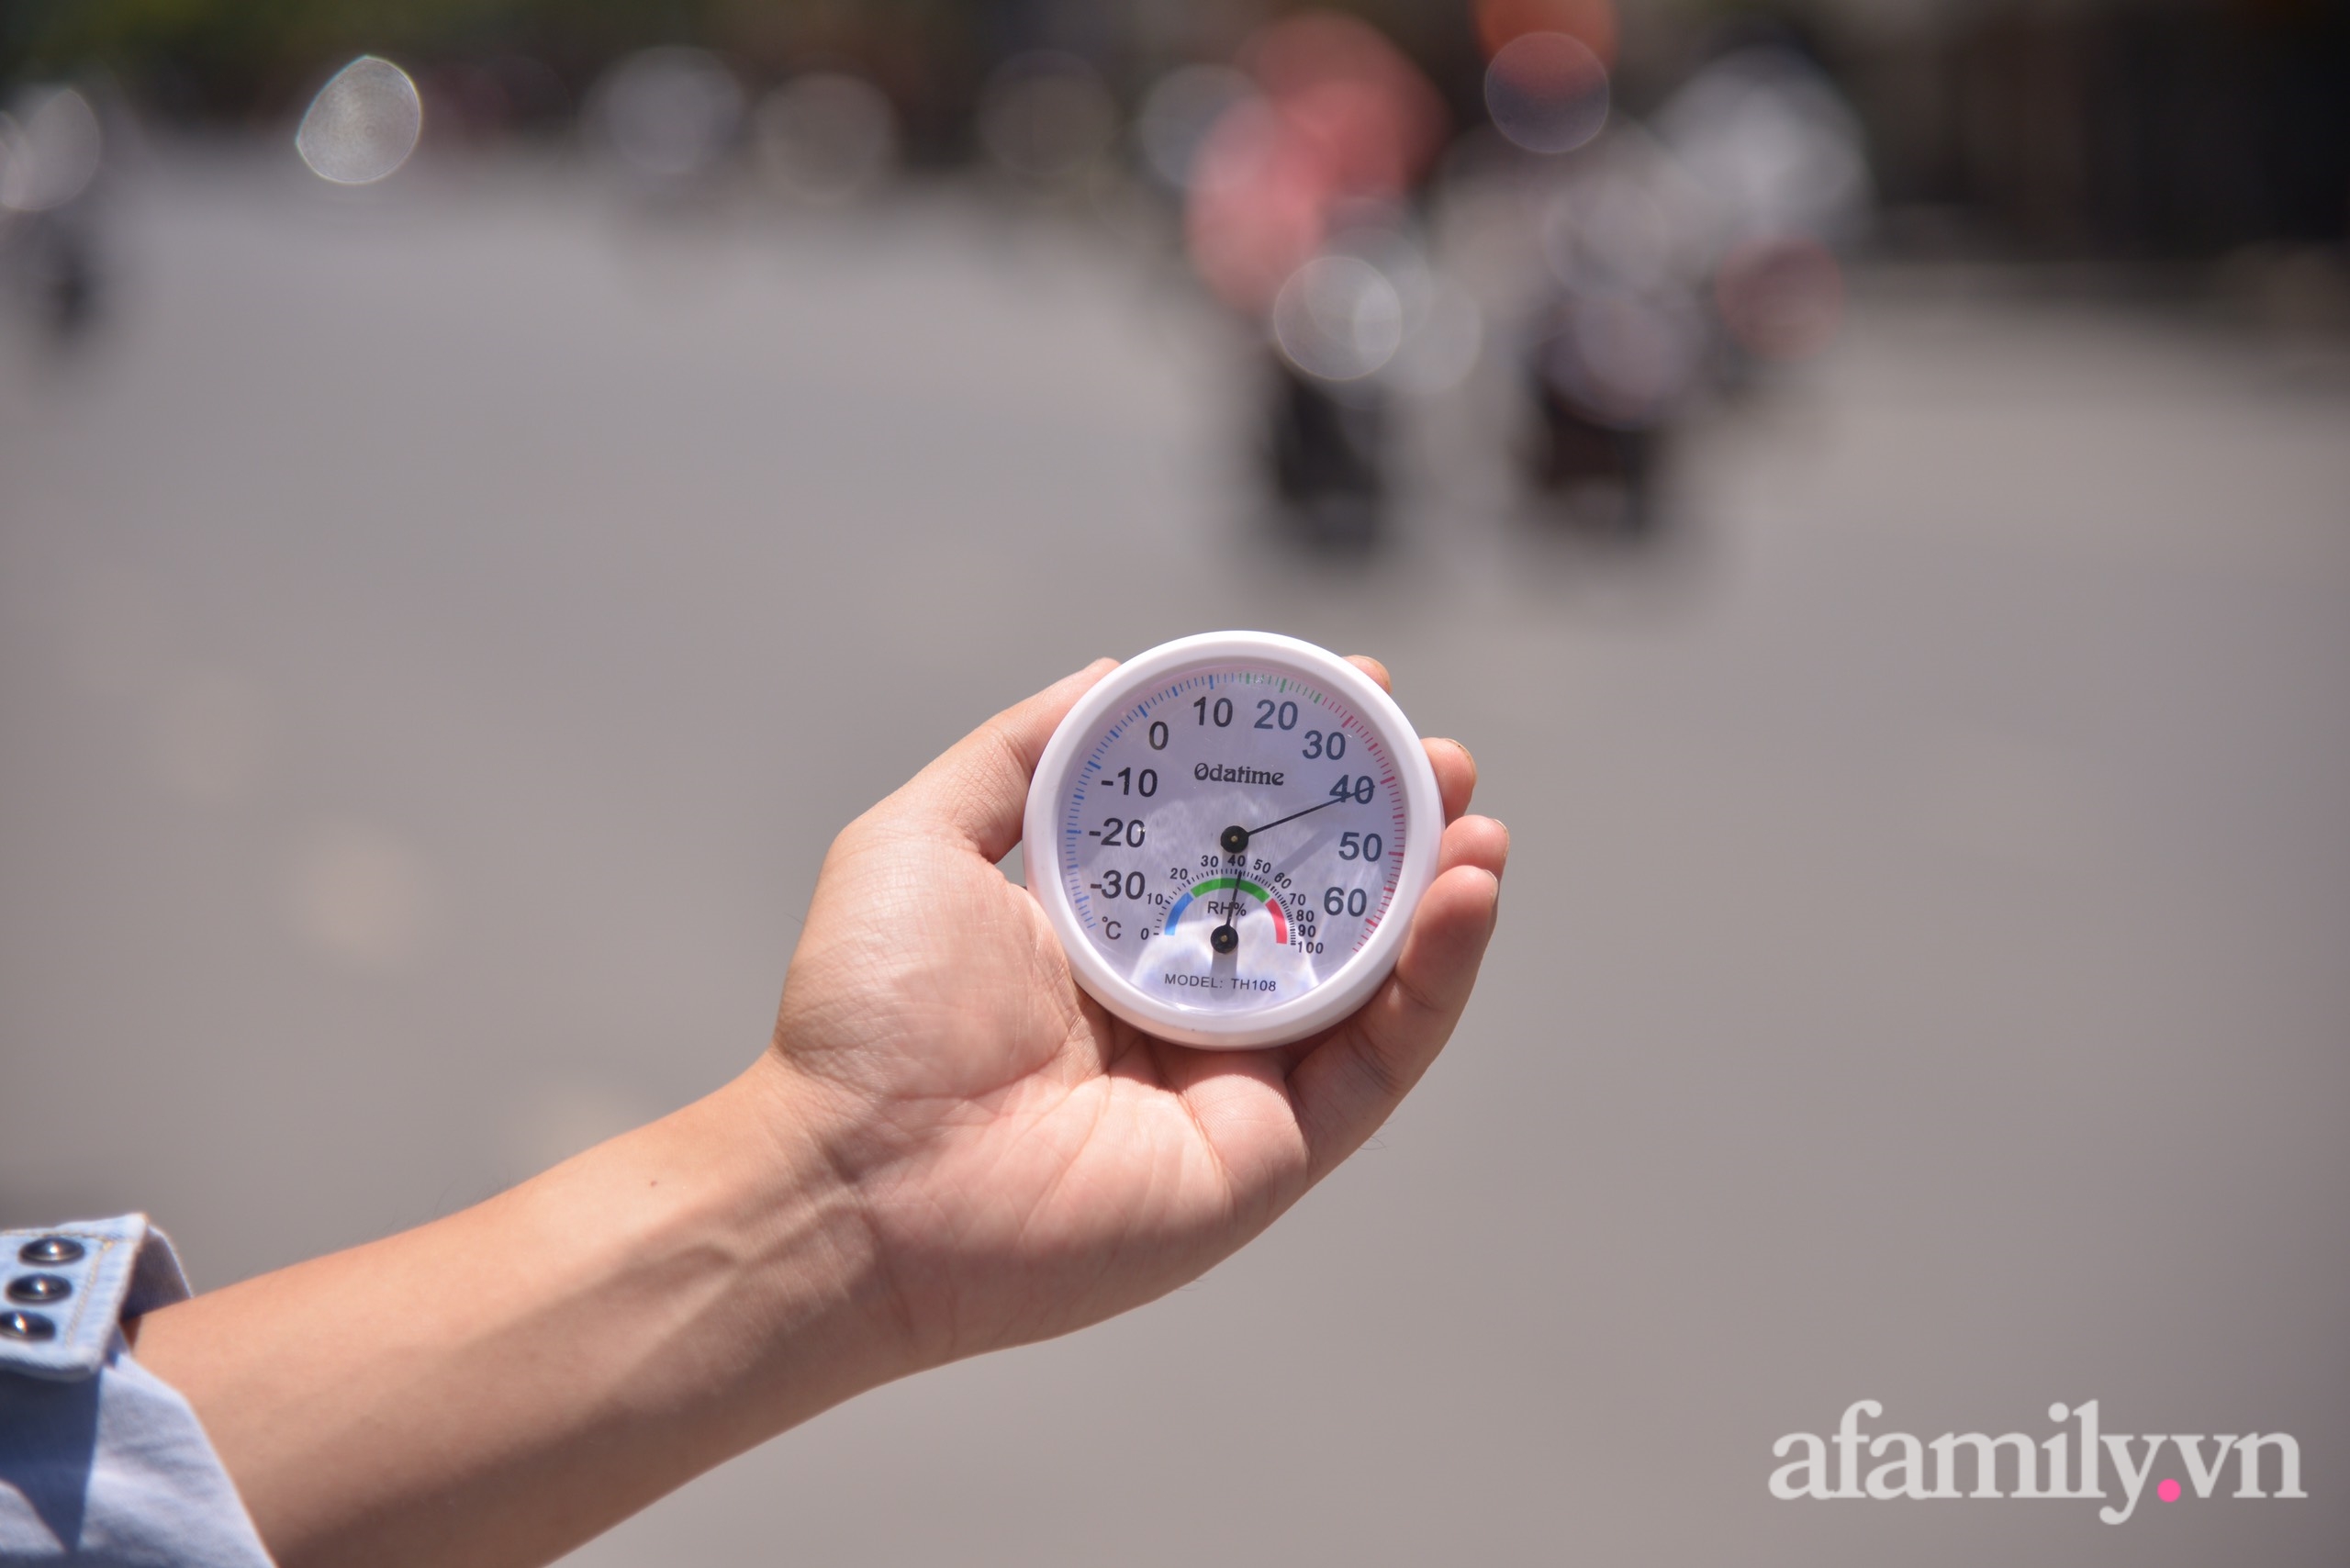 Hà Nội nắng nóng nhất từ đầu mùa, nền nhiệt ngoài trời trên 40 độ, đường phố xuất hiện ảo ảnh - Ảnh 1.